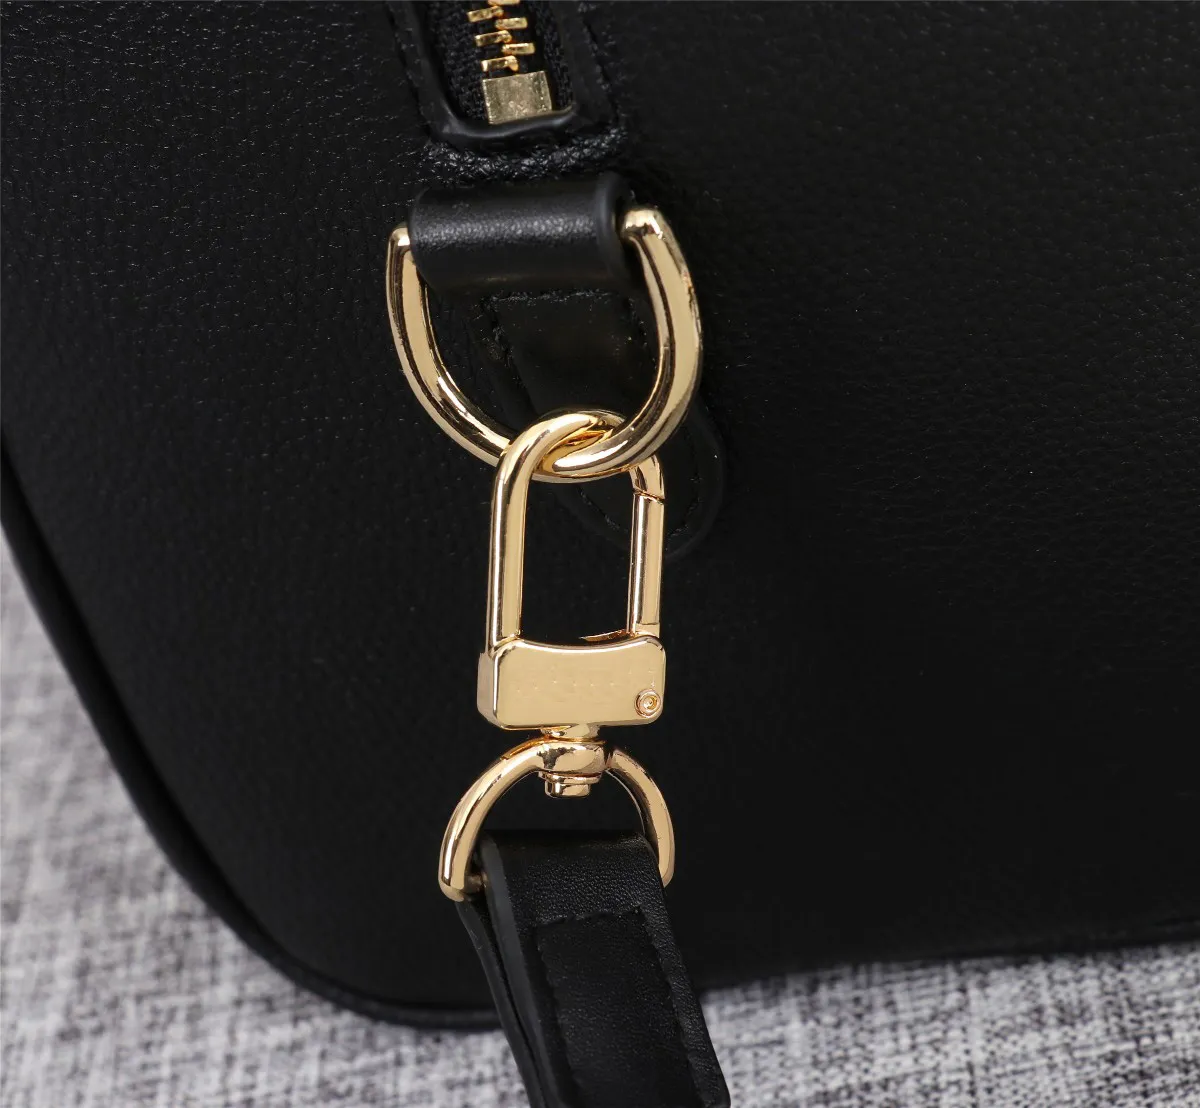 Neue Einkaufstasche Vollleder, die hochwertige Tasche Handtasche Frauen Taschen Umhängetasche 264p Präparieren